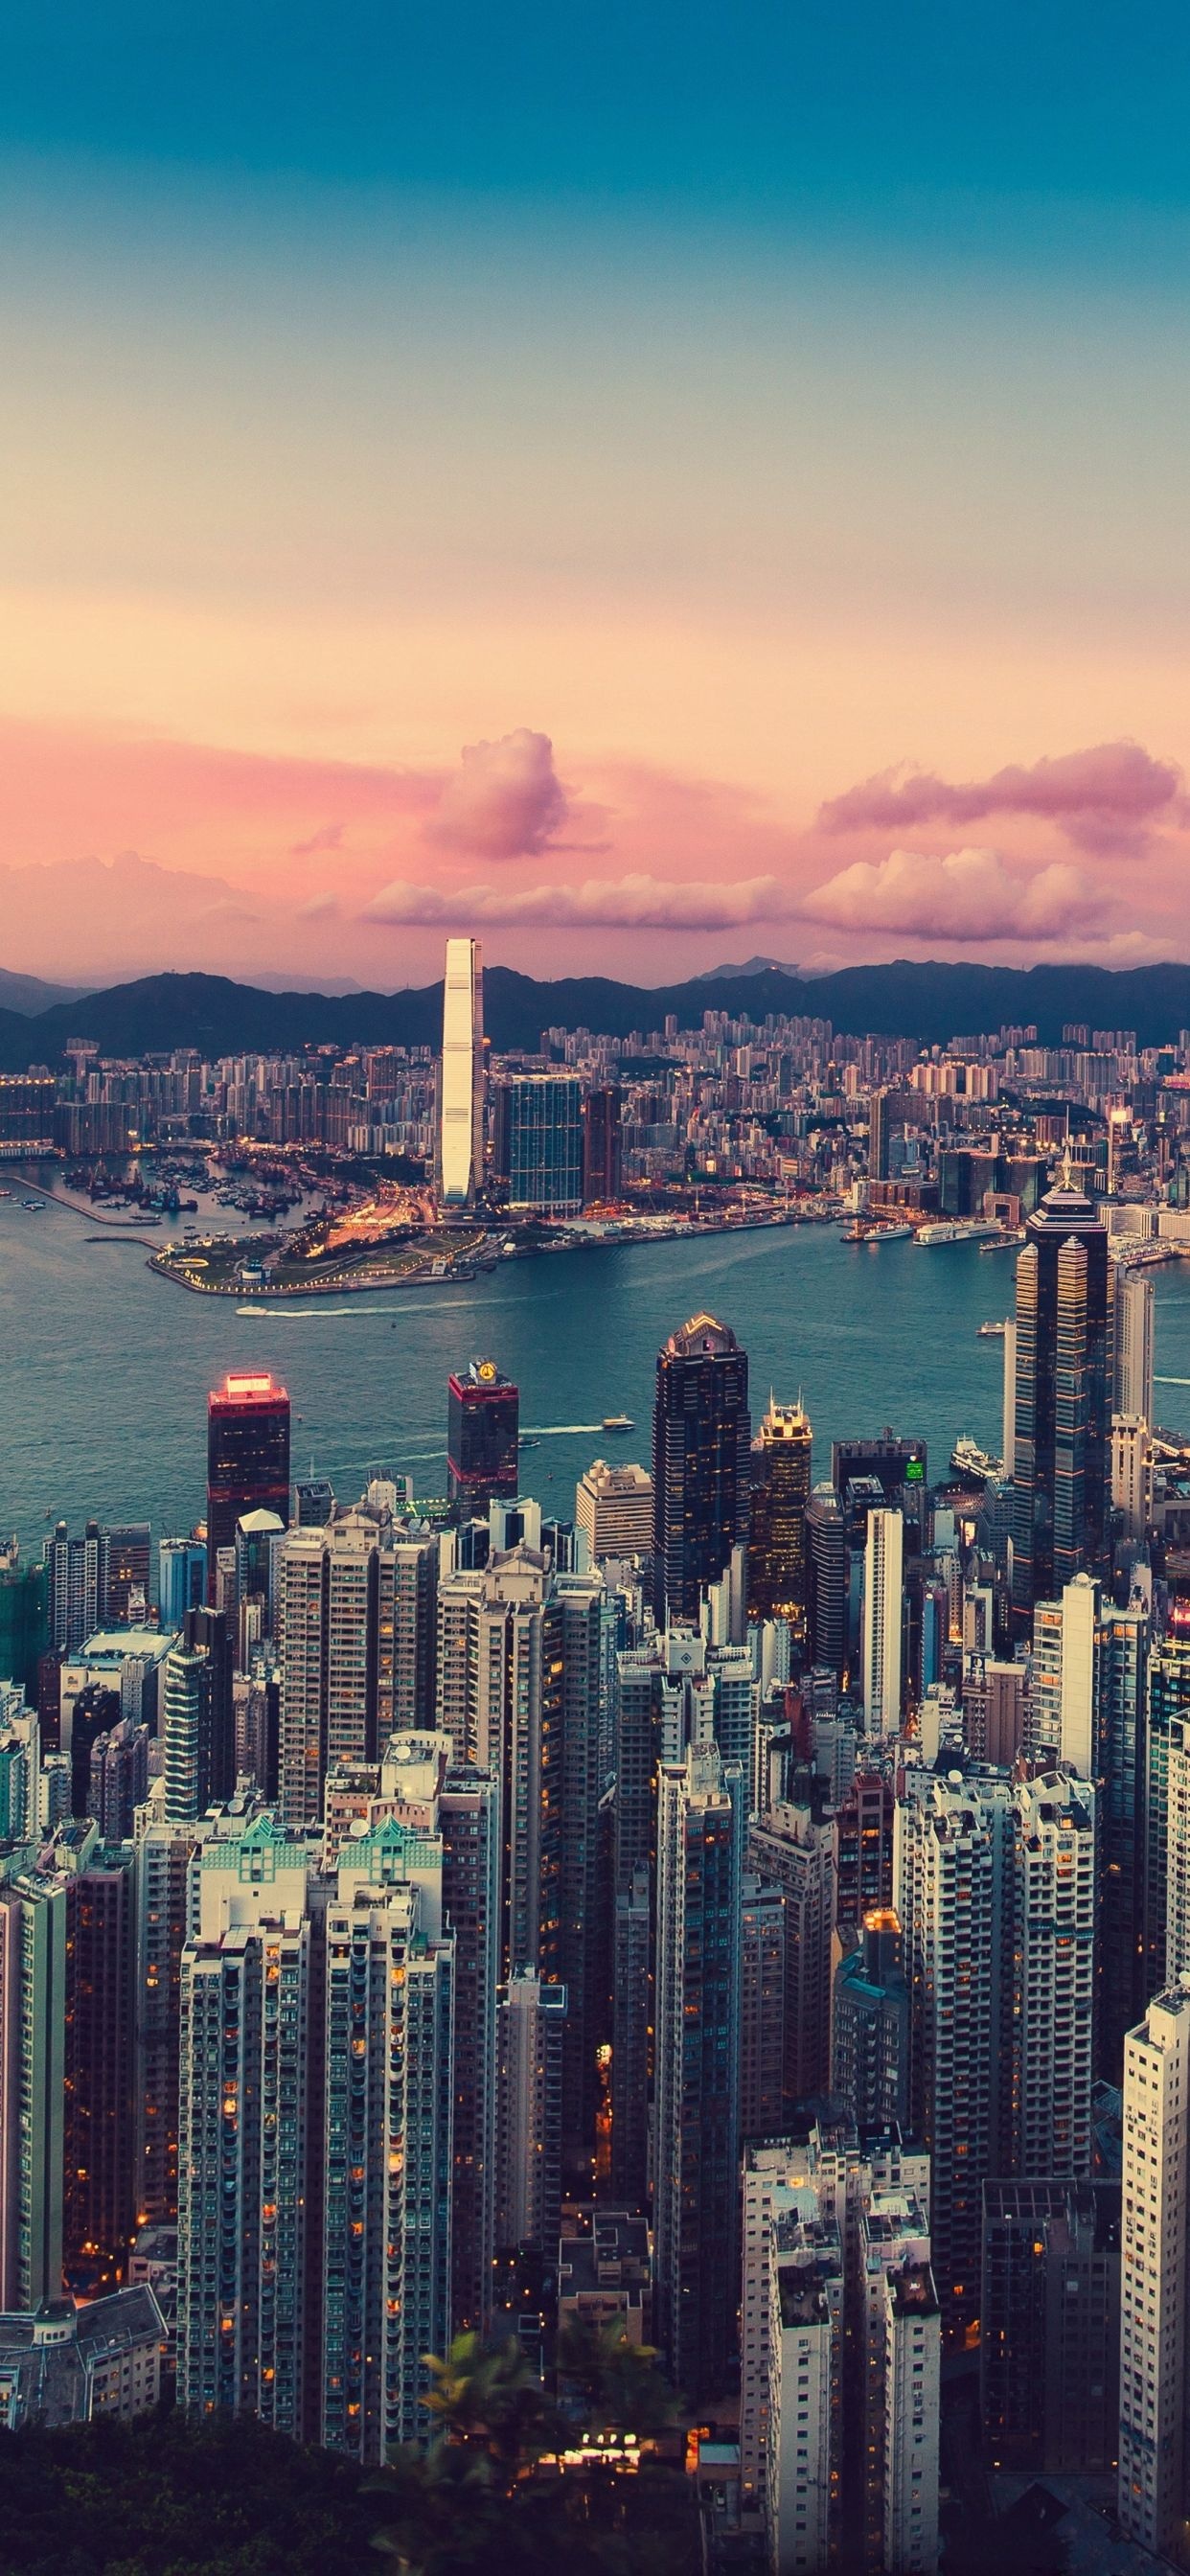 Hong Kong Skyline, Incredible iPhone XS Max wallpaper, Captivating city views, Urban beauty, 1250x2690 HD Handy